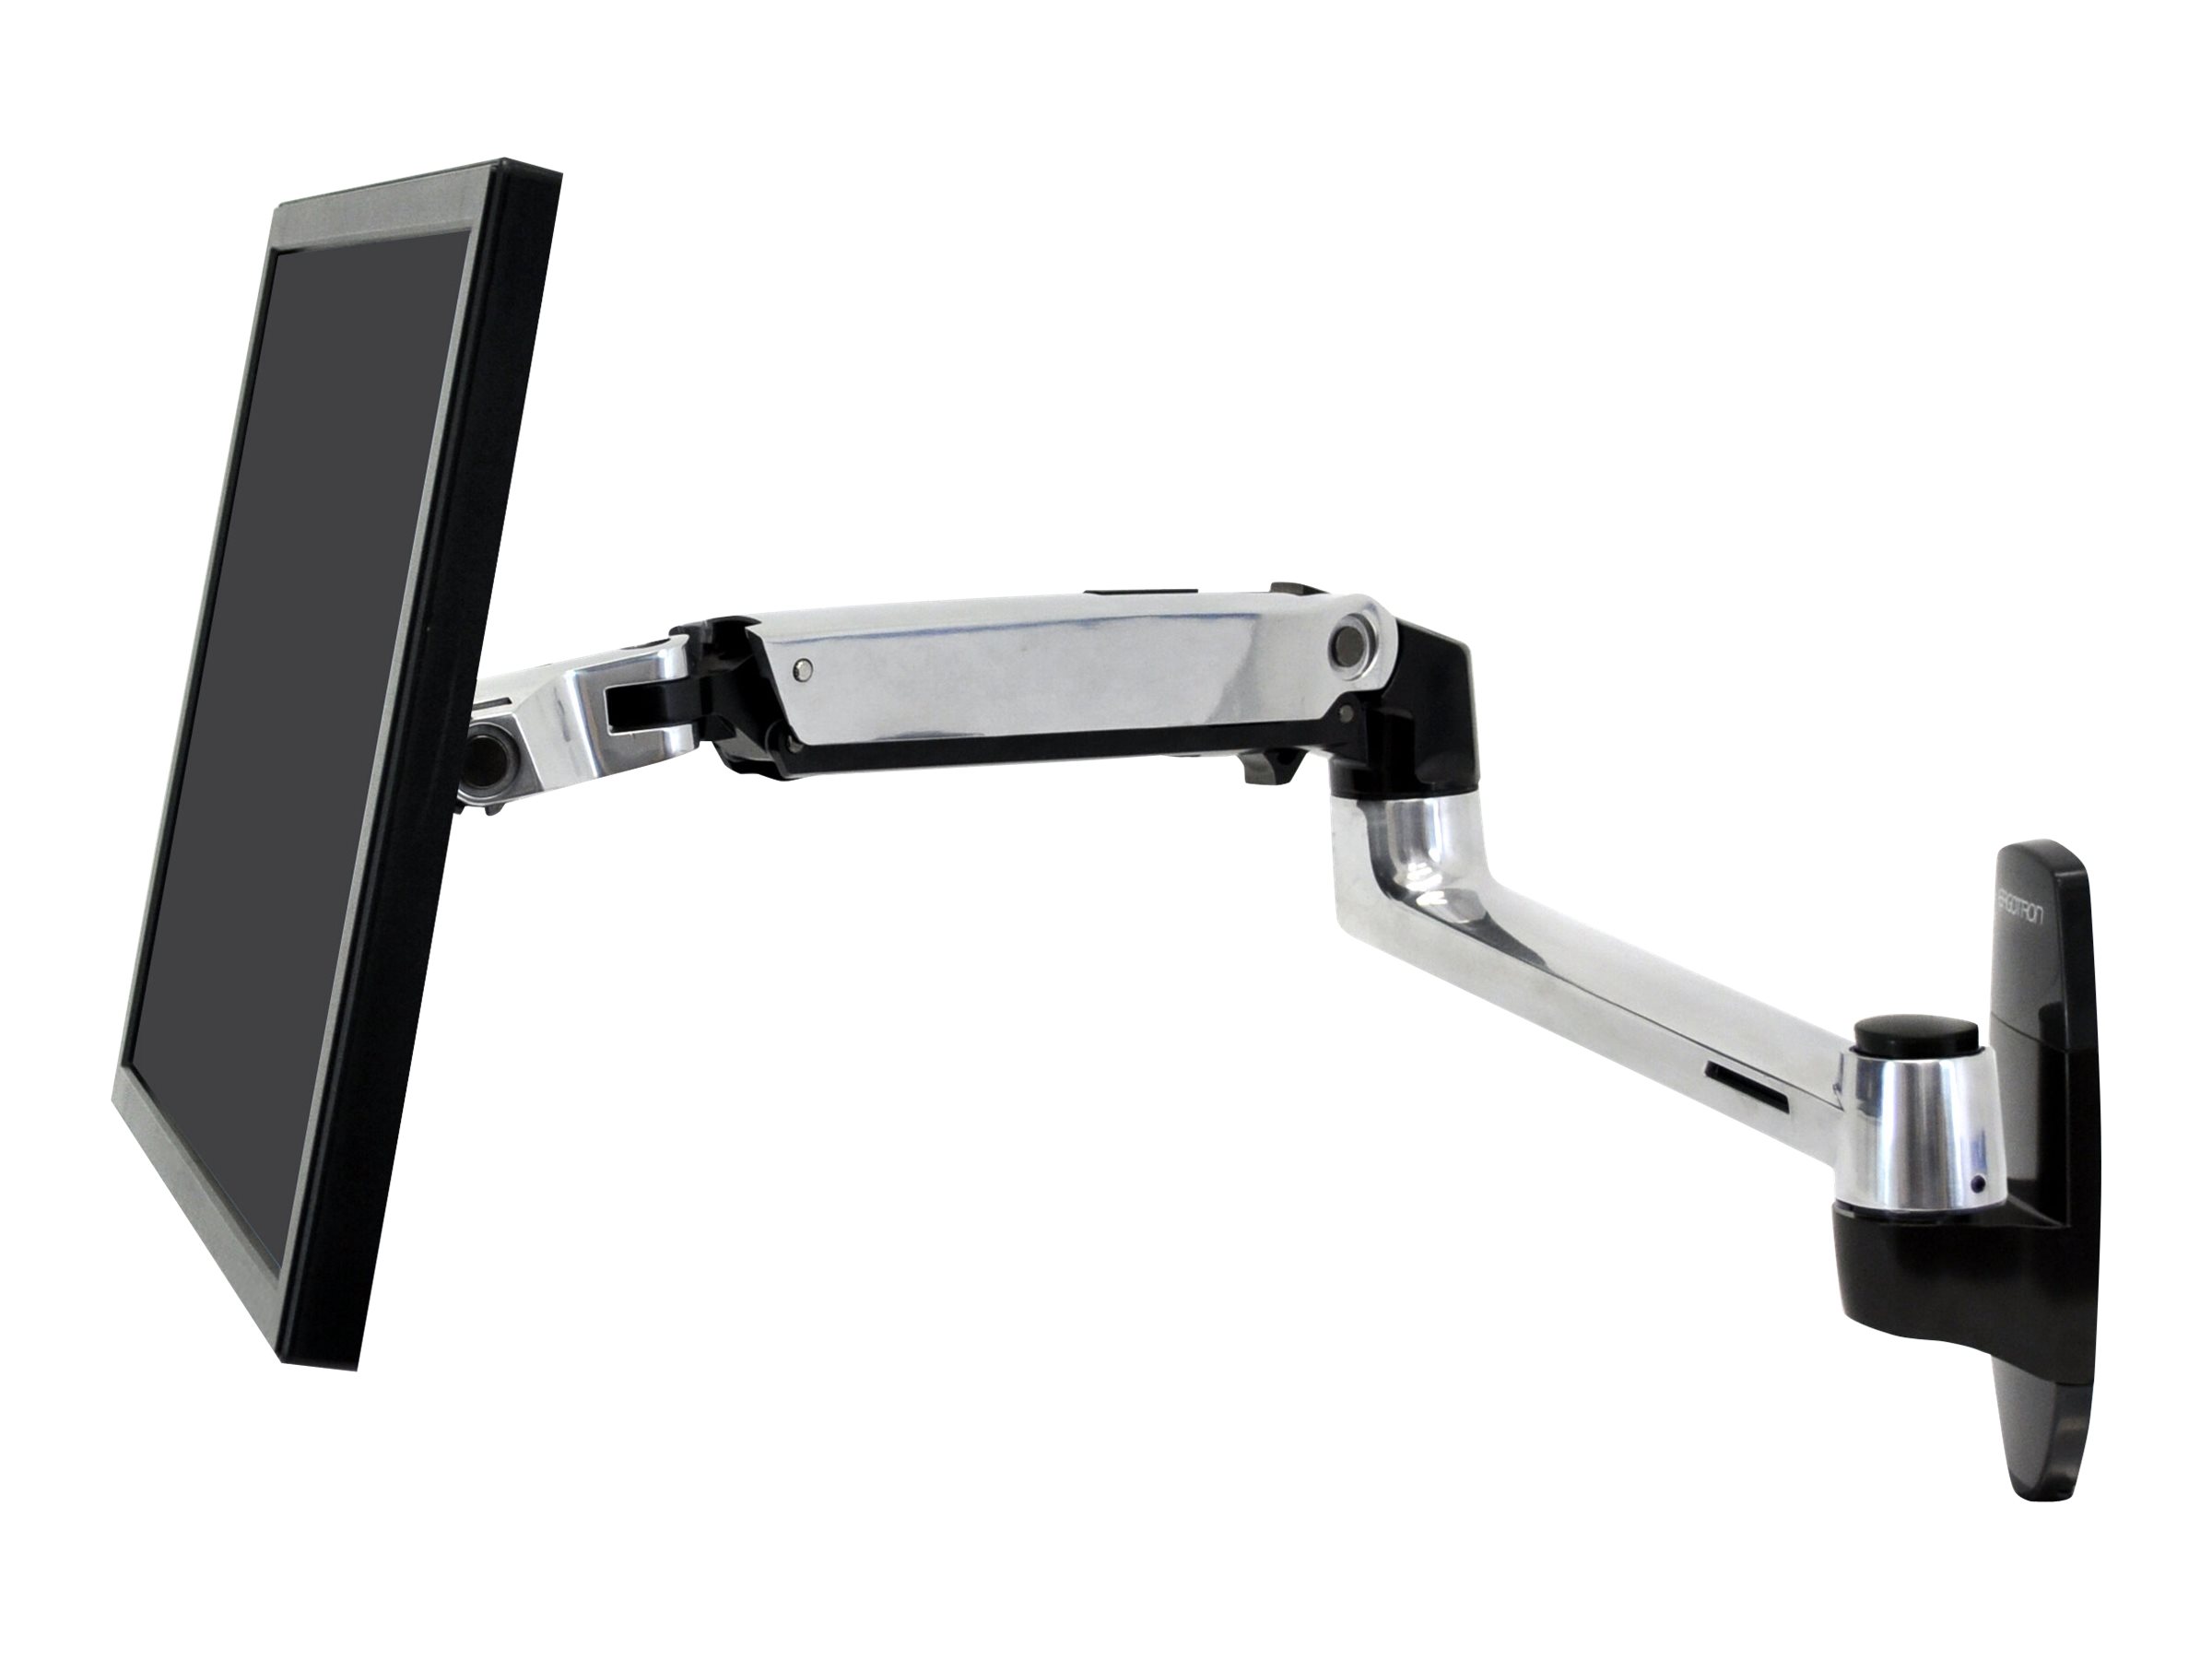 ERGOTRON LX LCD Arm fuer Wandmontage bis 81,3cm 32 Zoll max.11kg. VESA 75x75+100x100mm neigen schwenken drehen